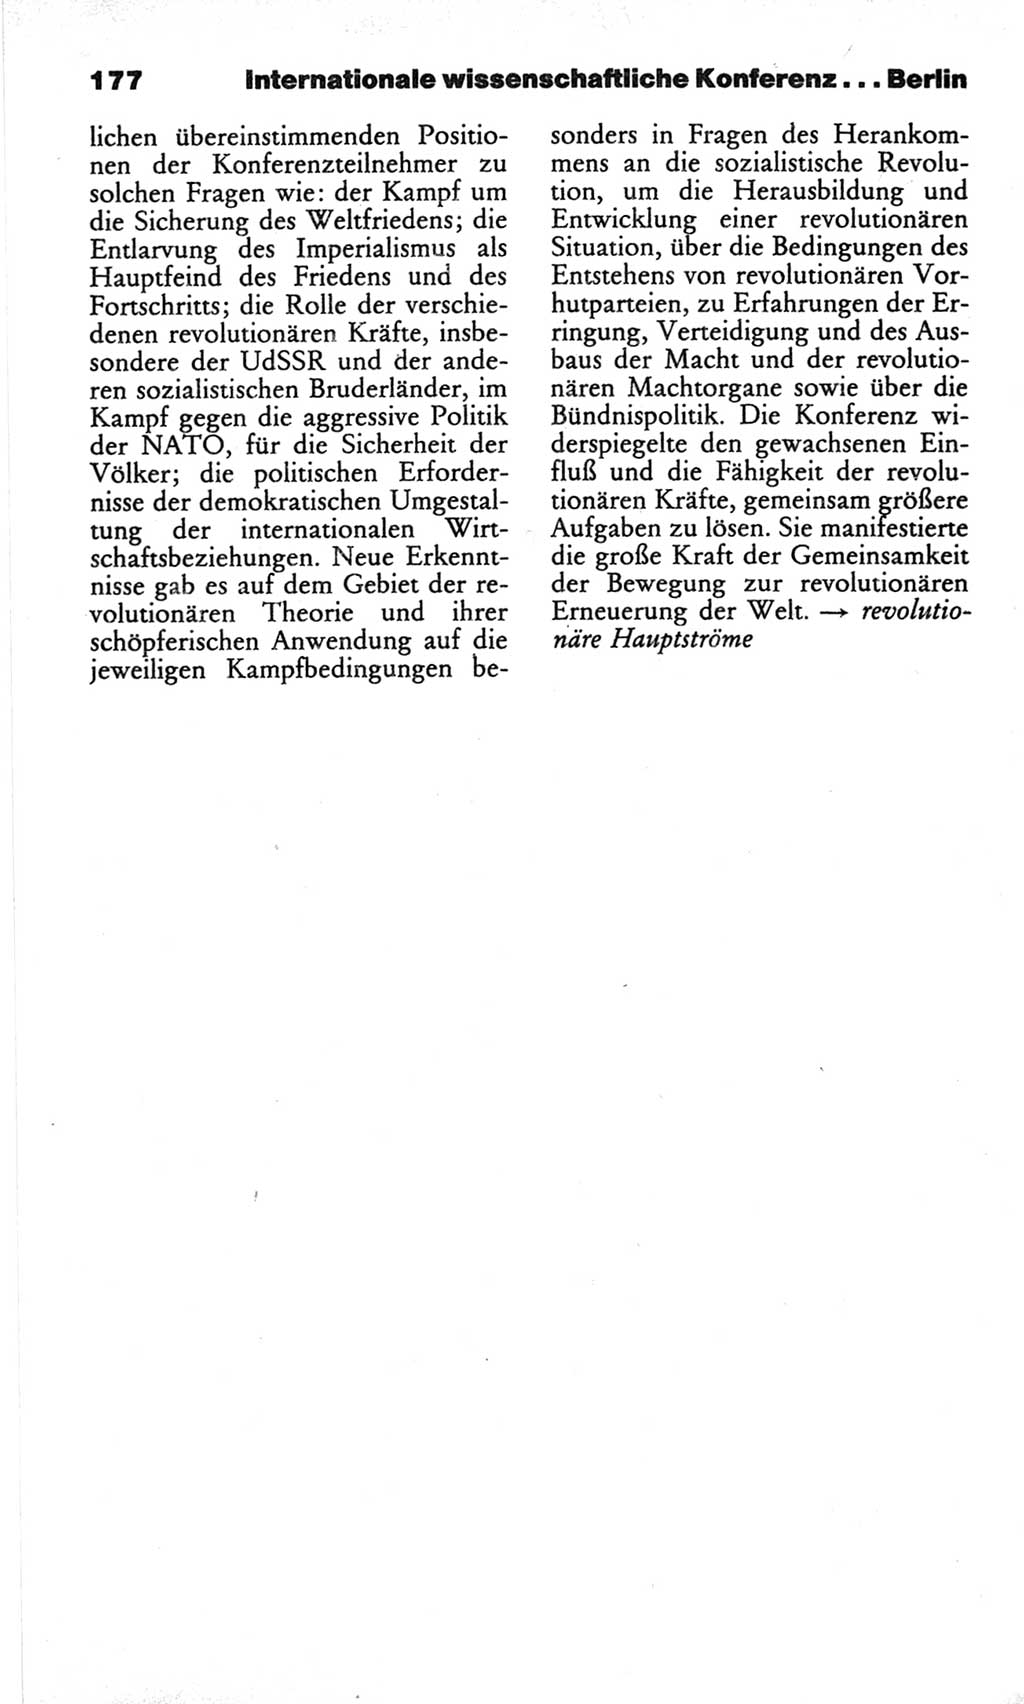 Wörterbuch des wissenschaftlichen Kommunismus [Deutsche Demokratische Republik (DDR)] 1982, Seite 177 (Wb. wiss. Komm. DDR 1982, S. 177)